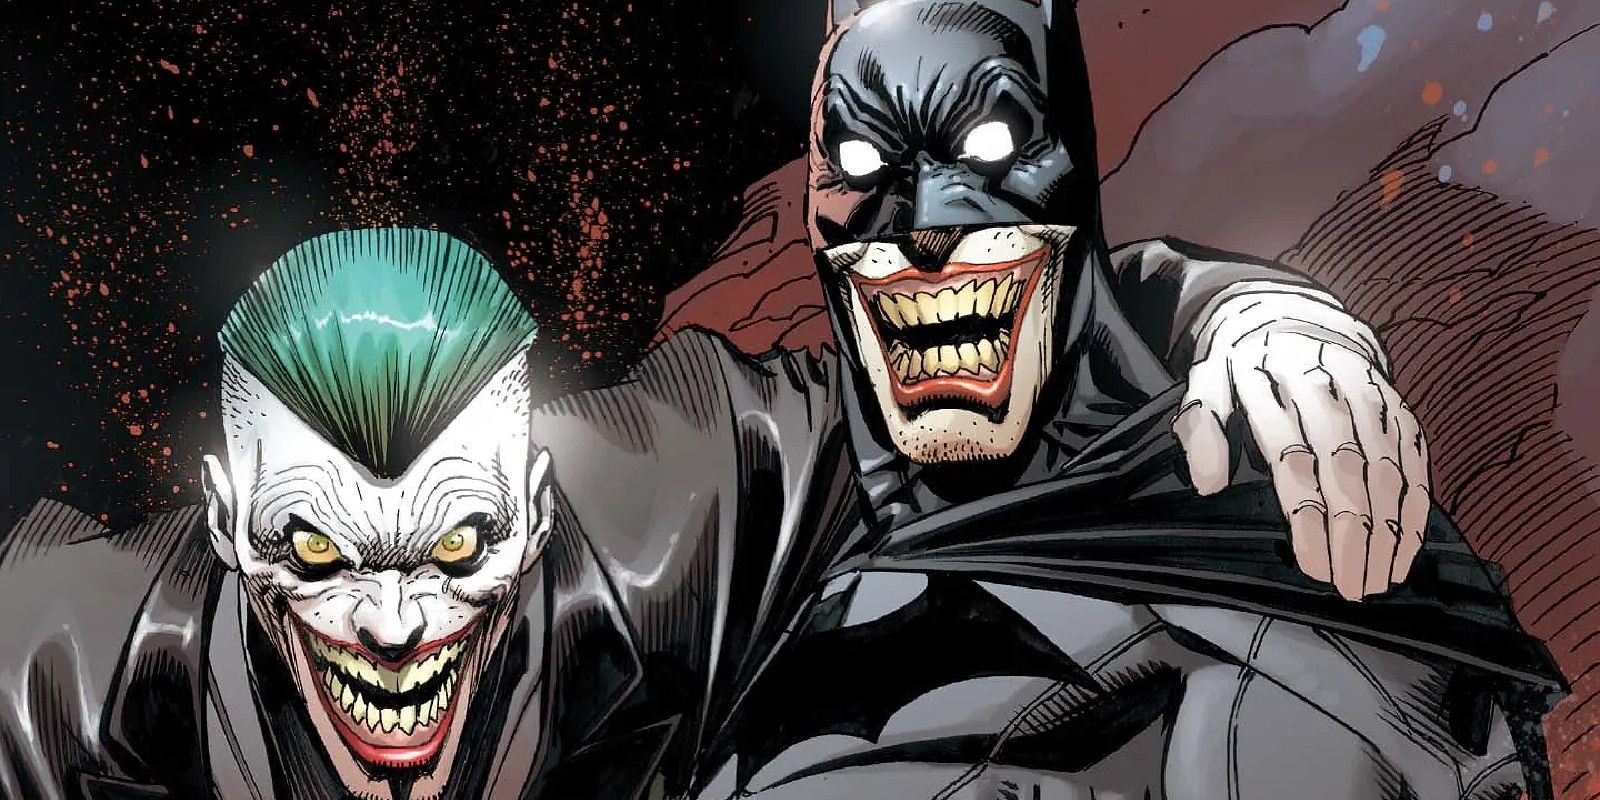 “Lo entiendo, simplemente no es gracioso”: el chiste favorito de Batman explica por qué el Joker está tan obsesionado con él (de verdad)